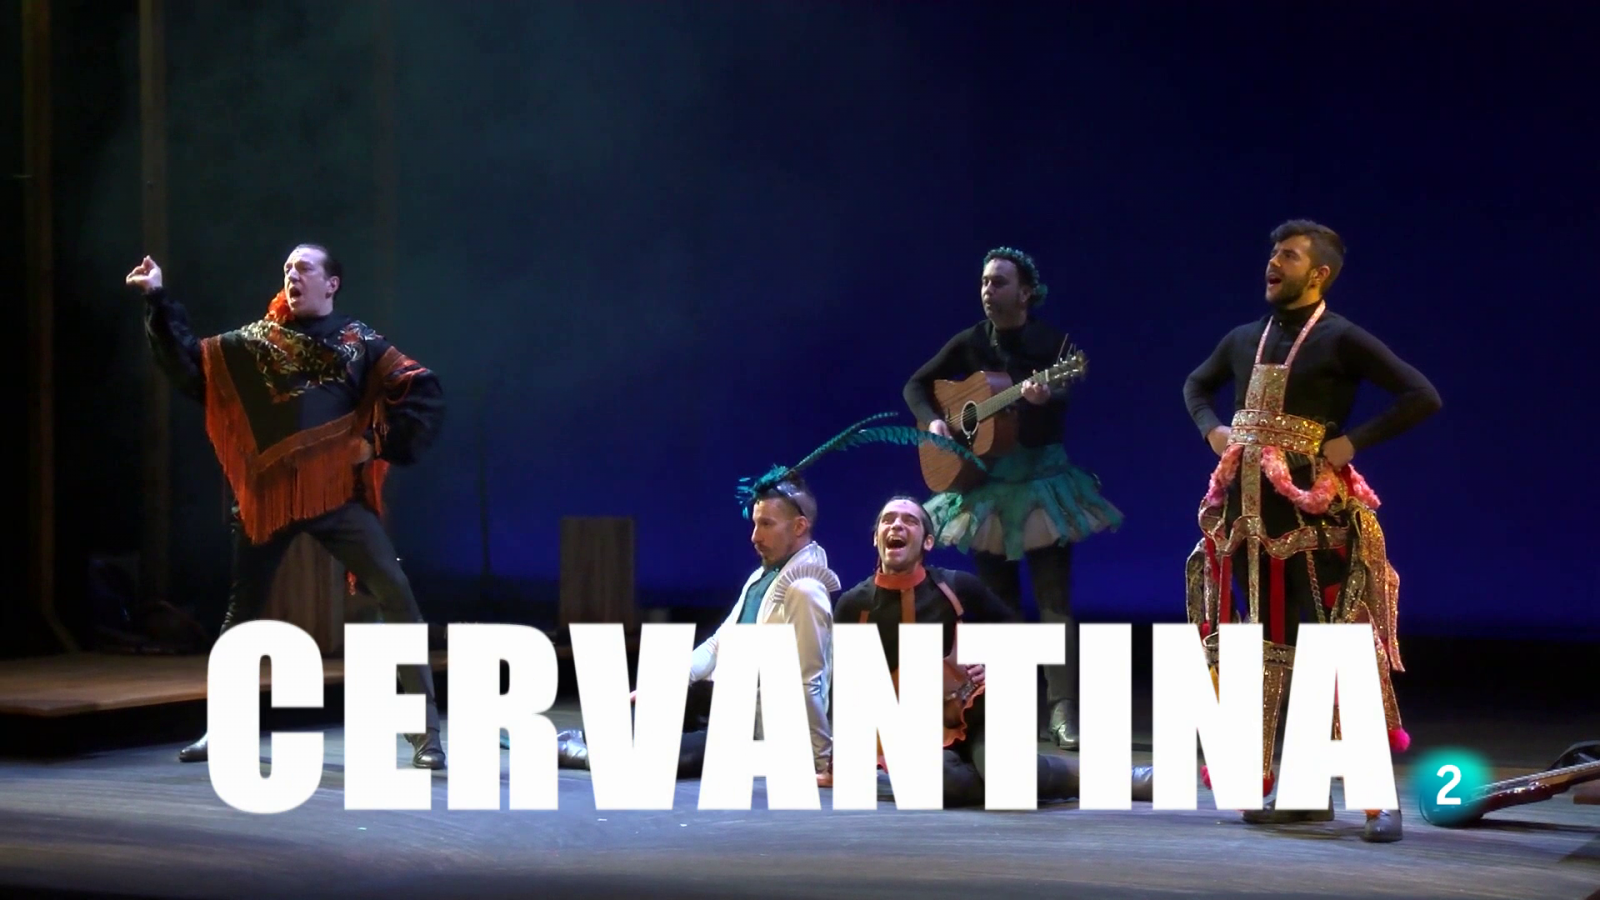 La2 es teatro - Cervantina (Presentación)